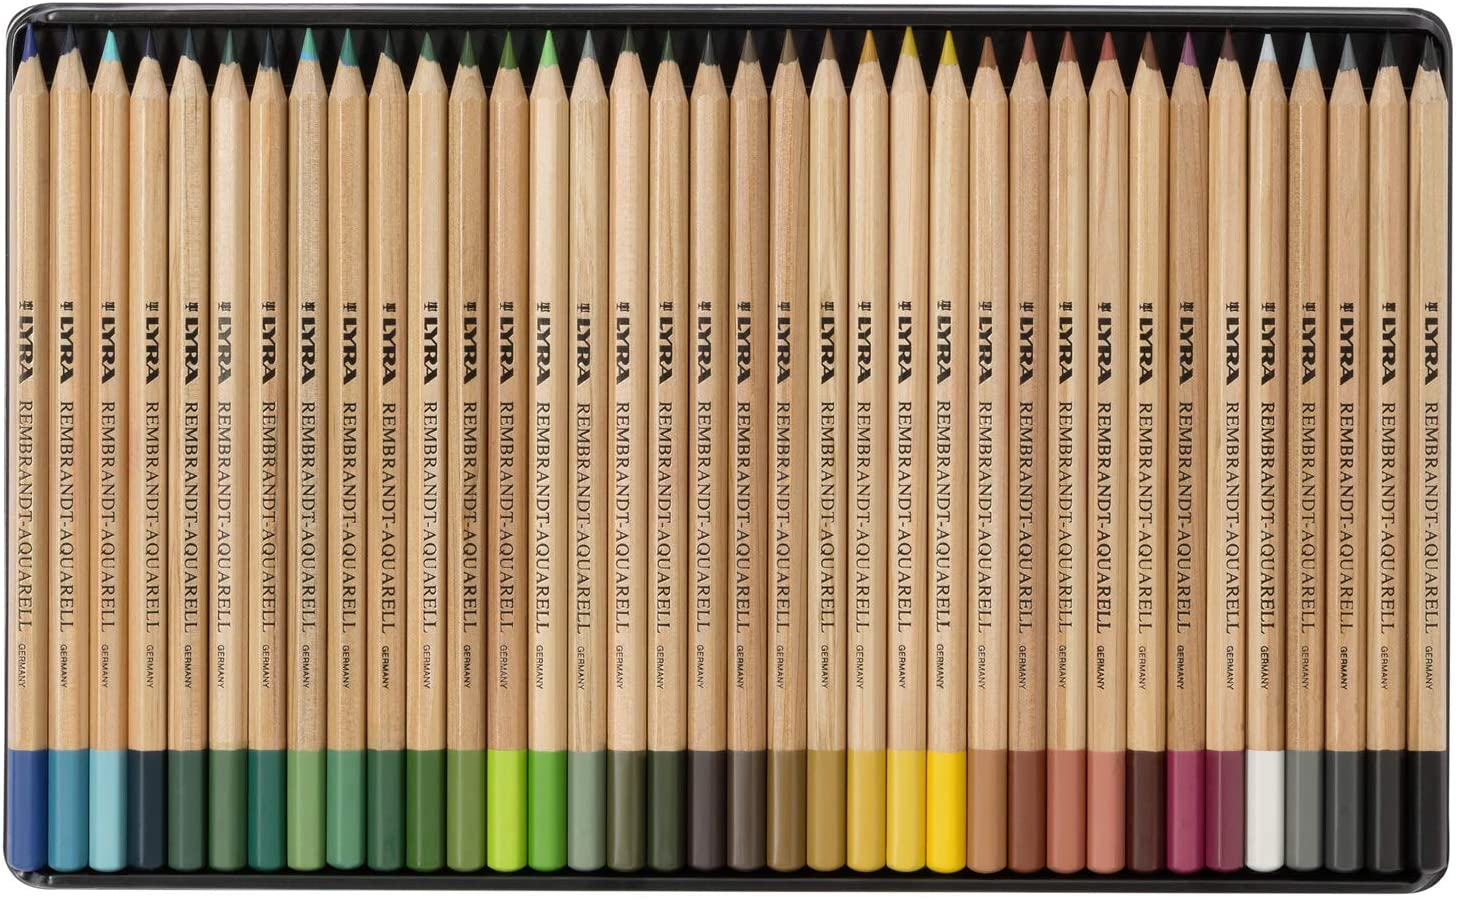 LYRA Rembrandt Aquarell Artists' Colored Pencils case close up